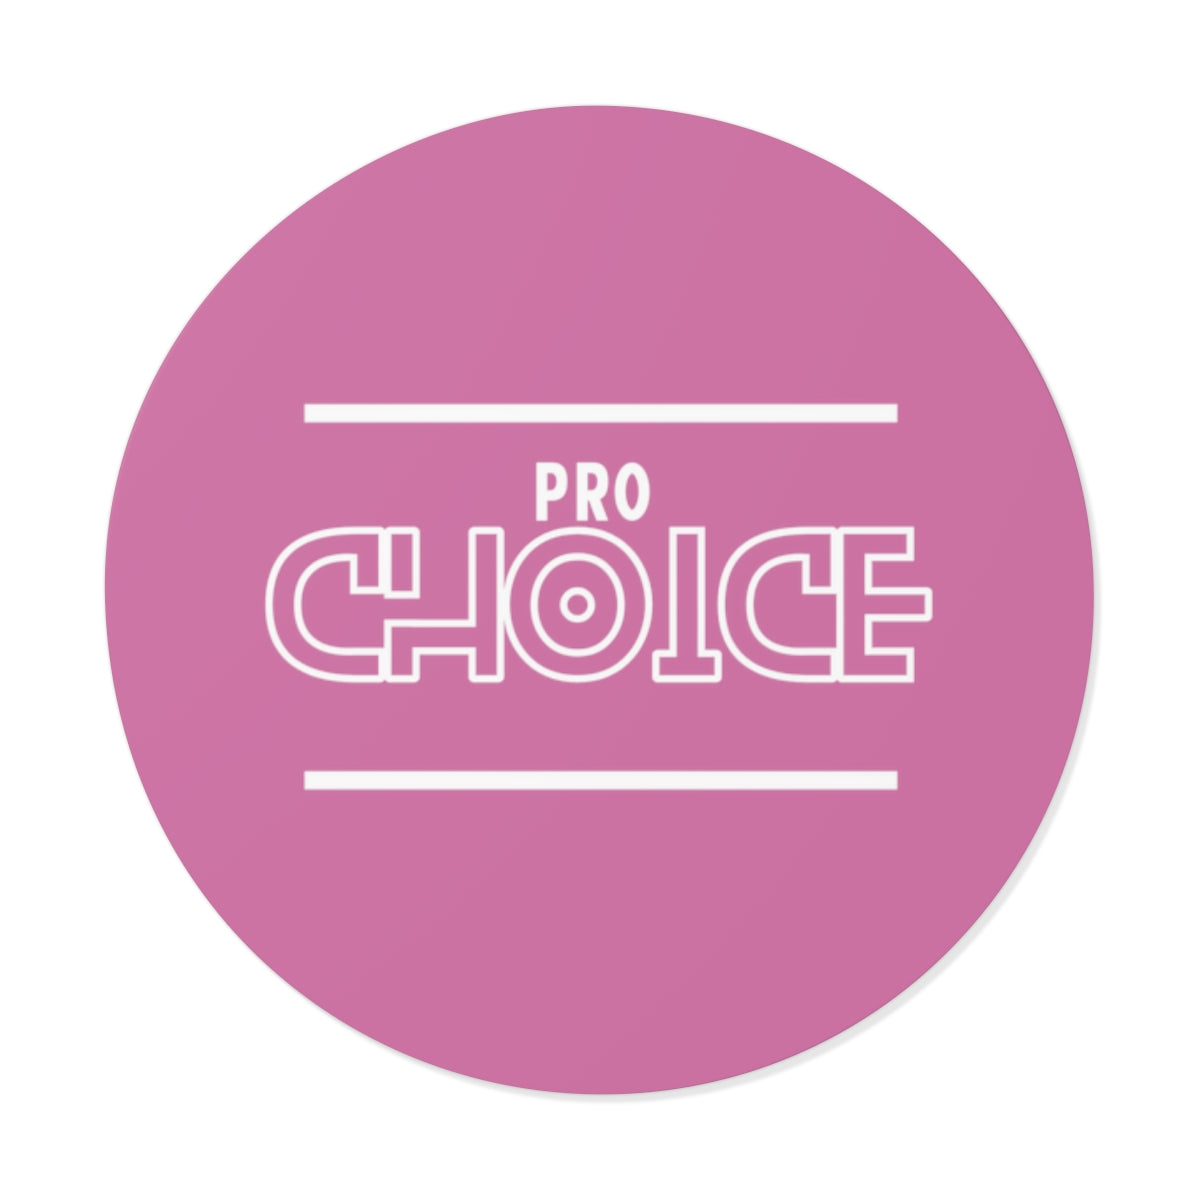 Pro Choice Vinyl Stickers